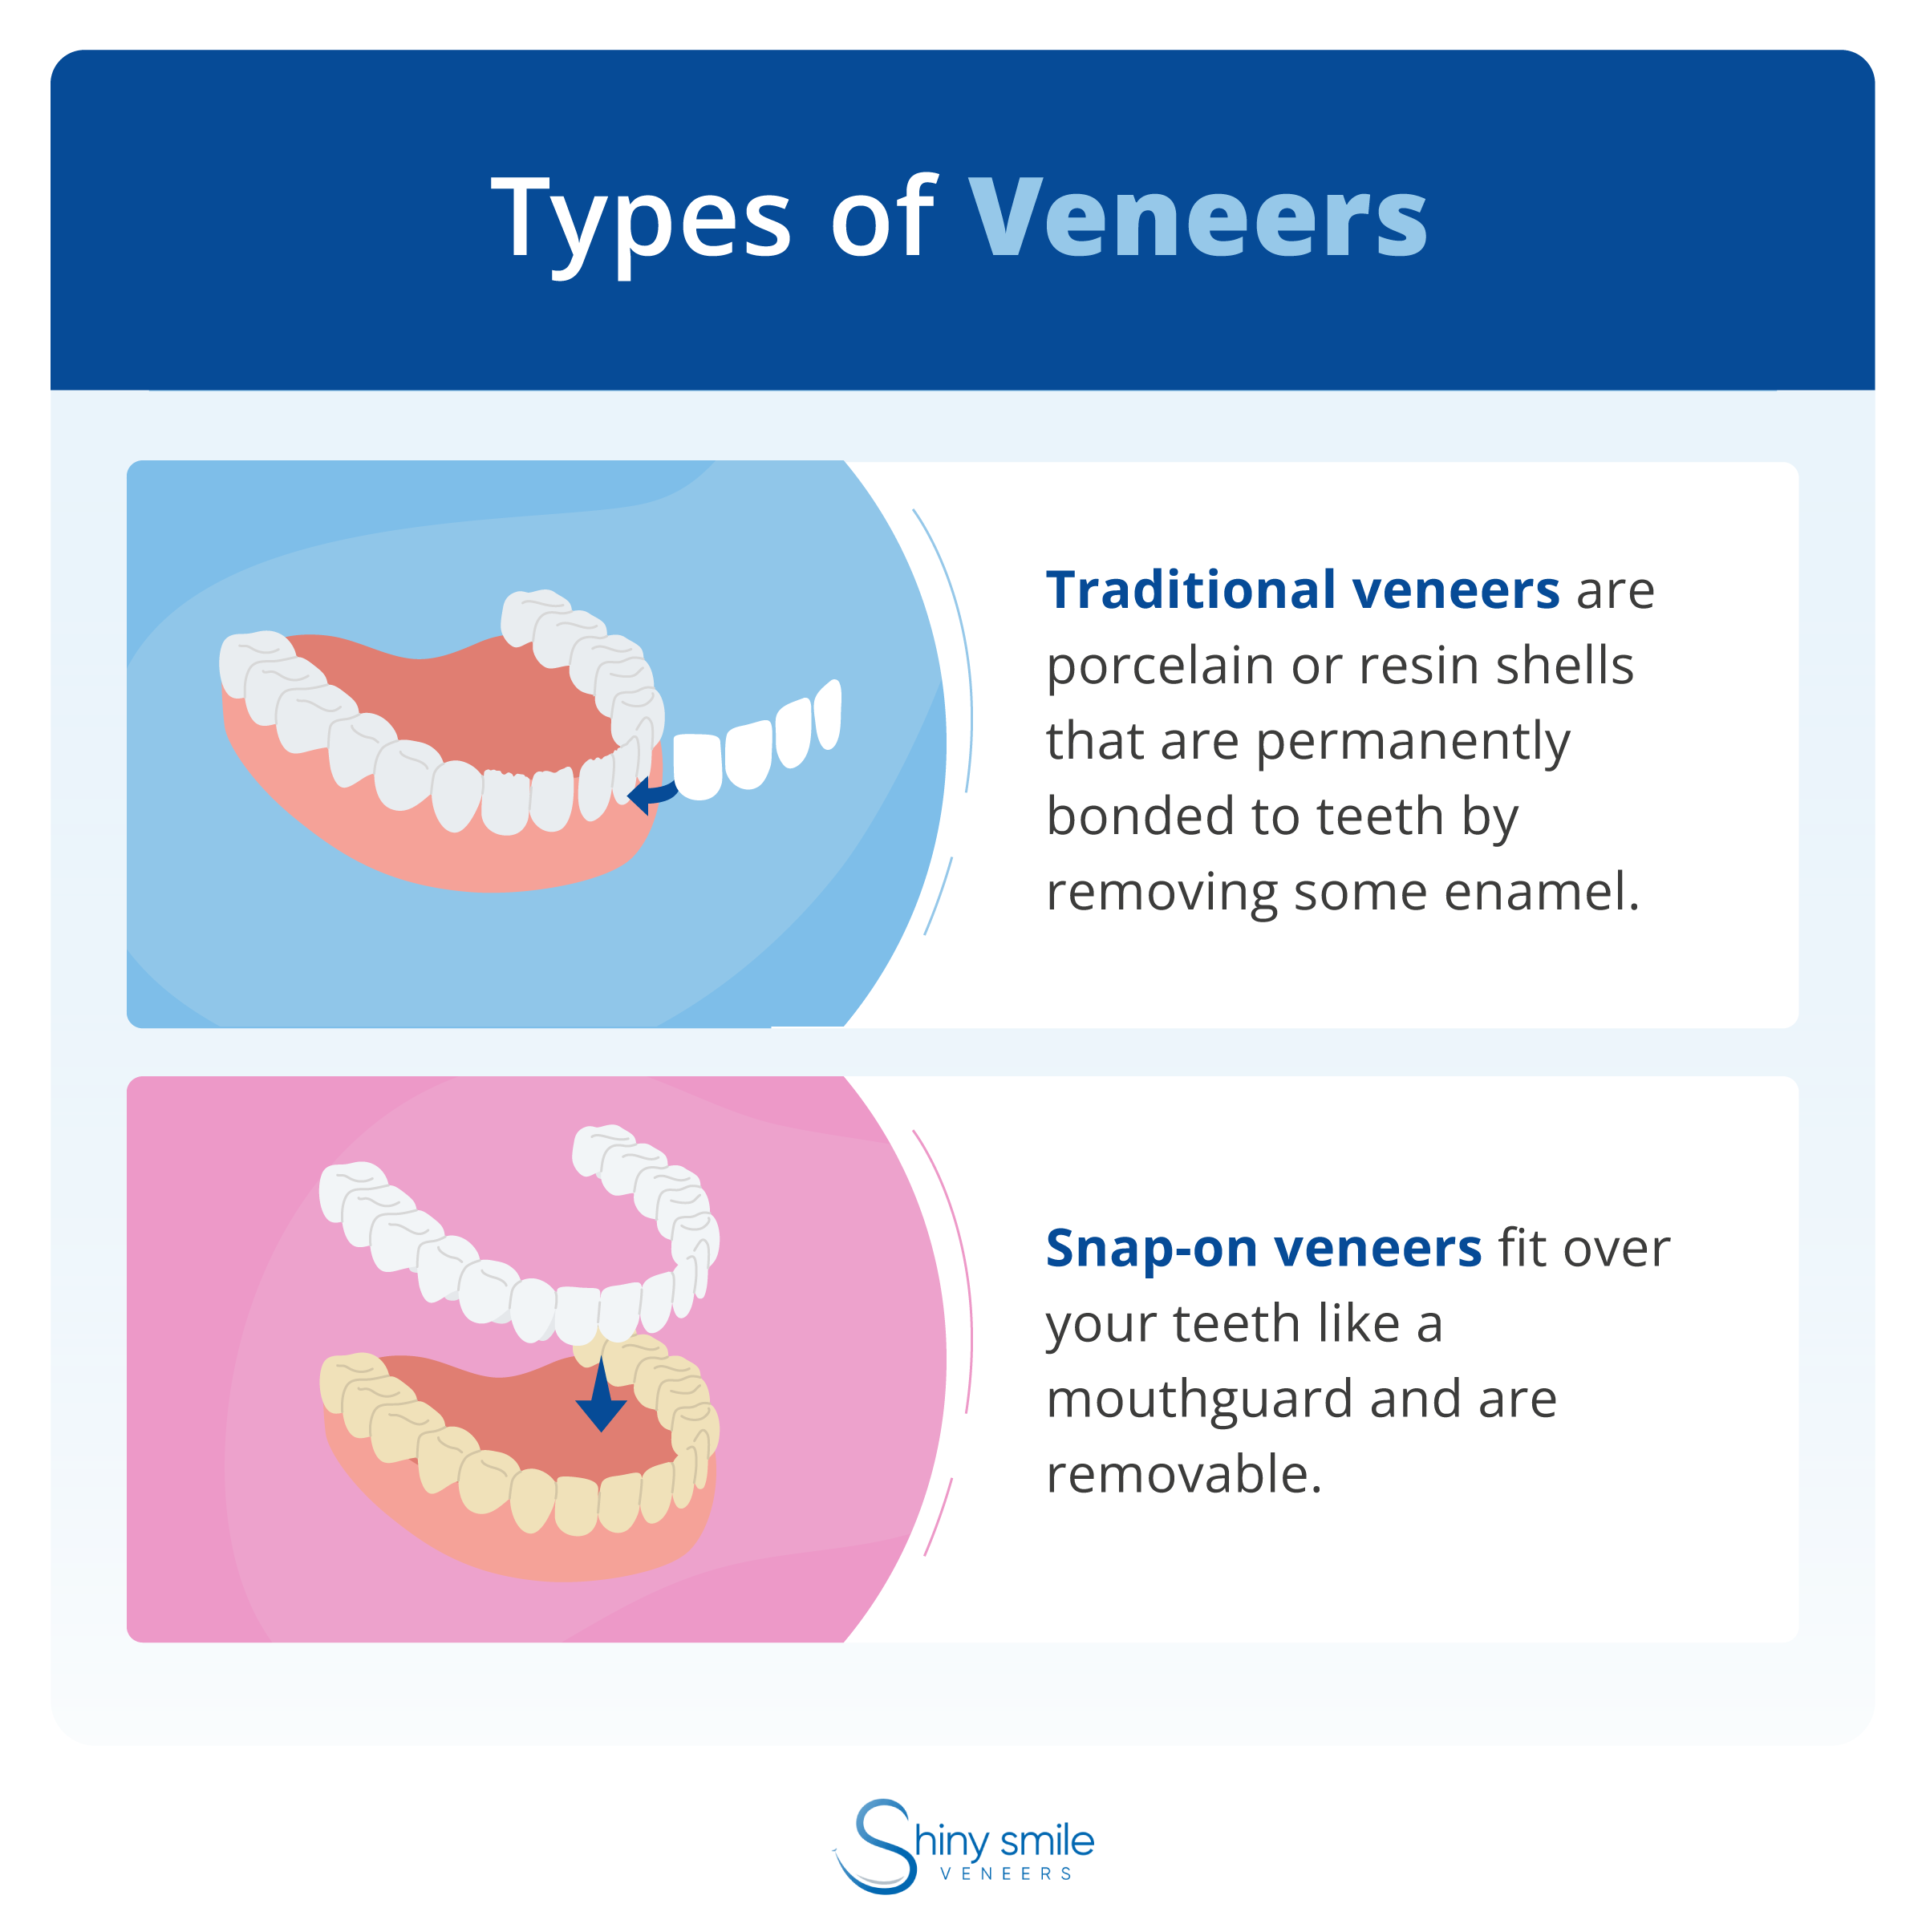 Two types of veneers